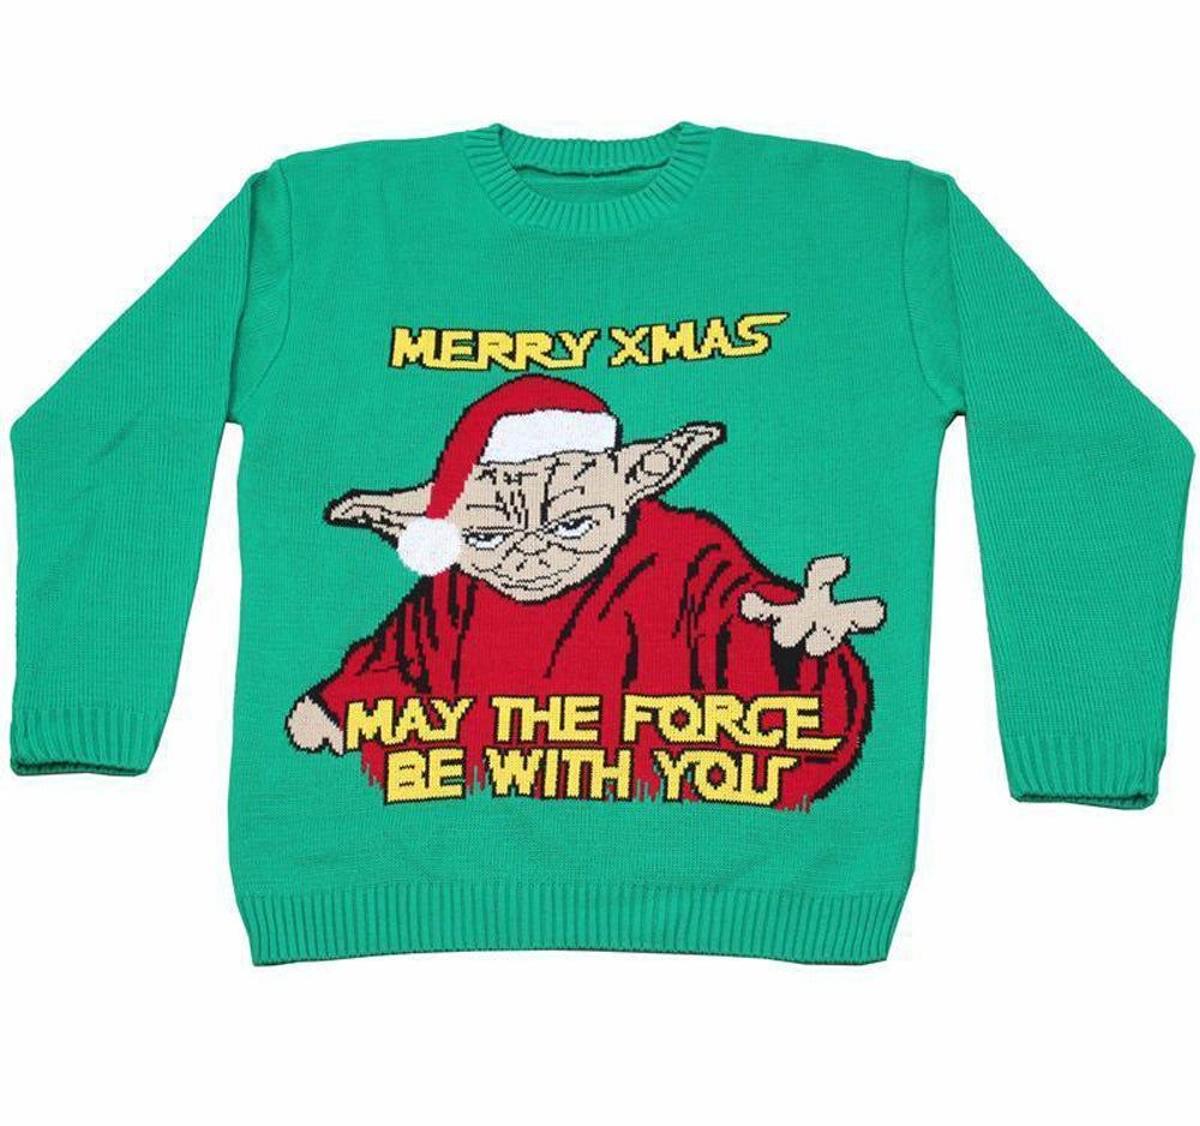 Jersey navideño de Star Wars en Ebay (Precio: 11,69 euros)